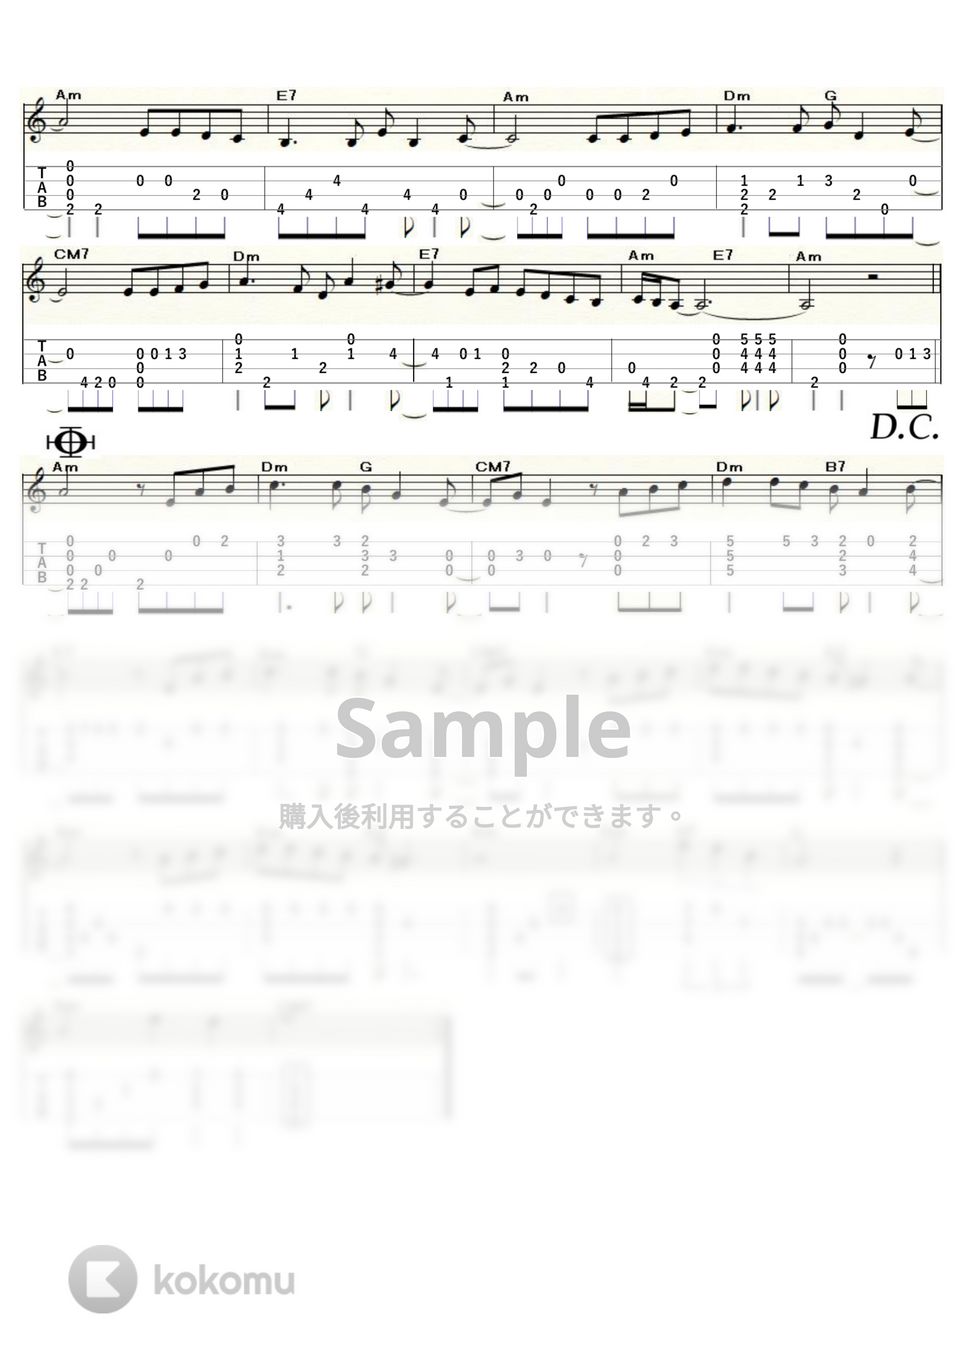 石川ひとみ - まちぶせ (ｳｸﾚﾚｿﾛ / Low-G / 中級) by ukulelepapa